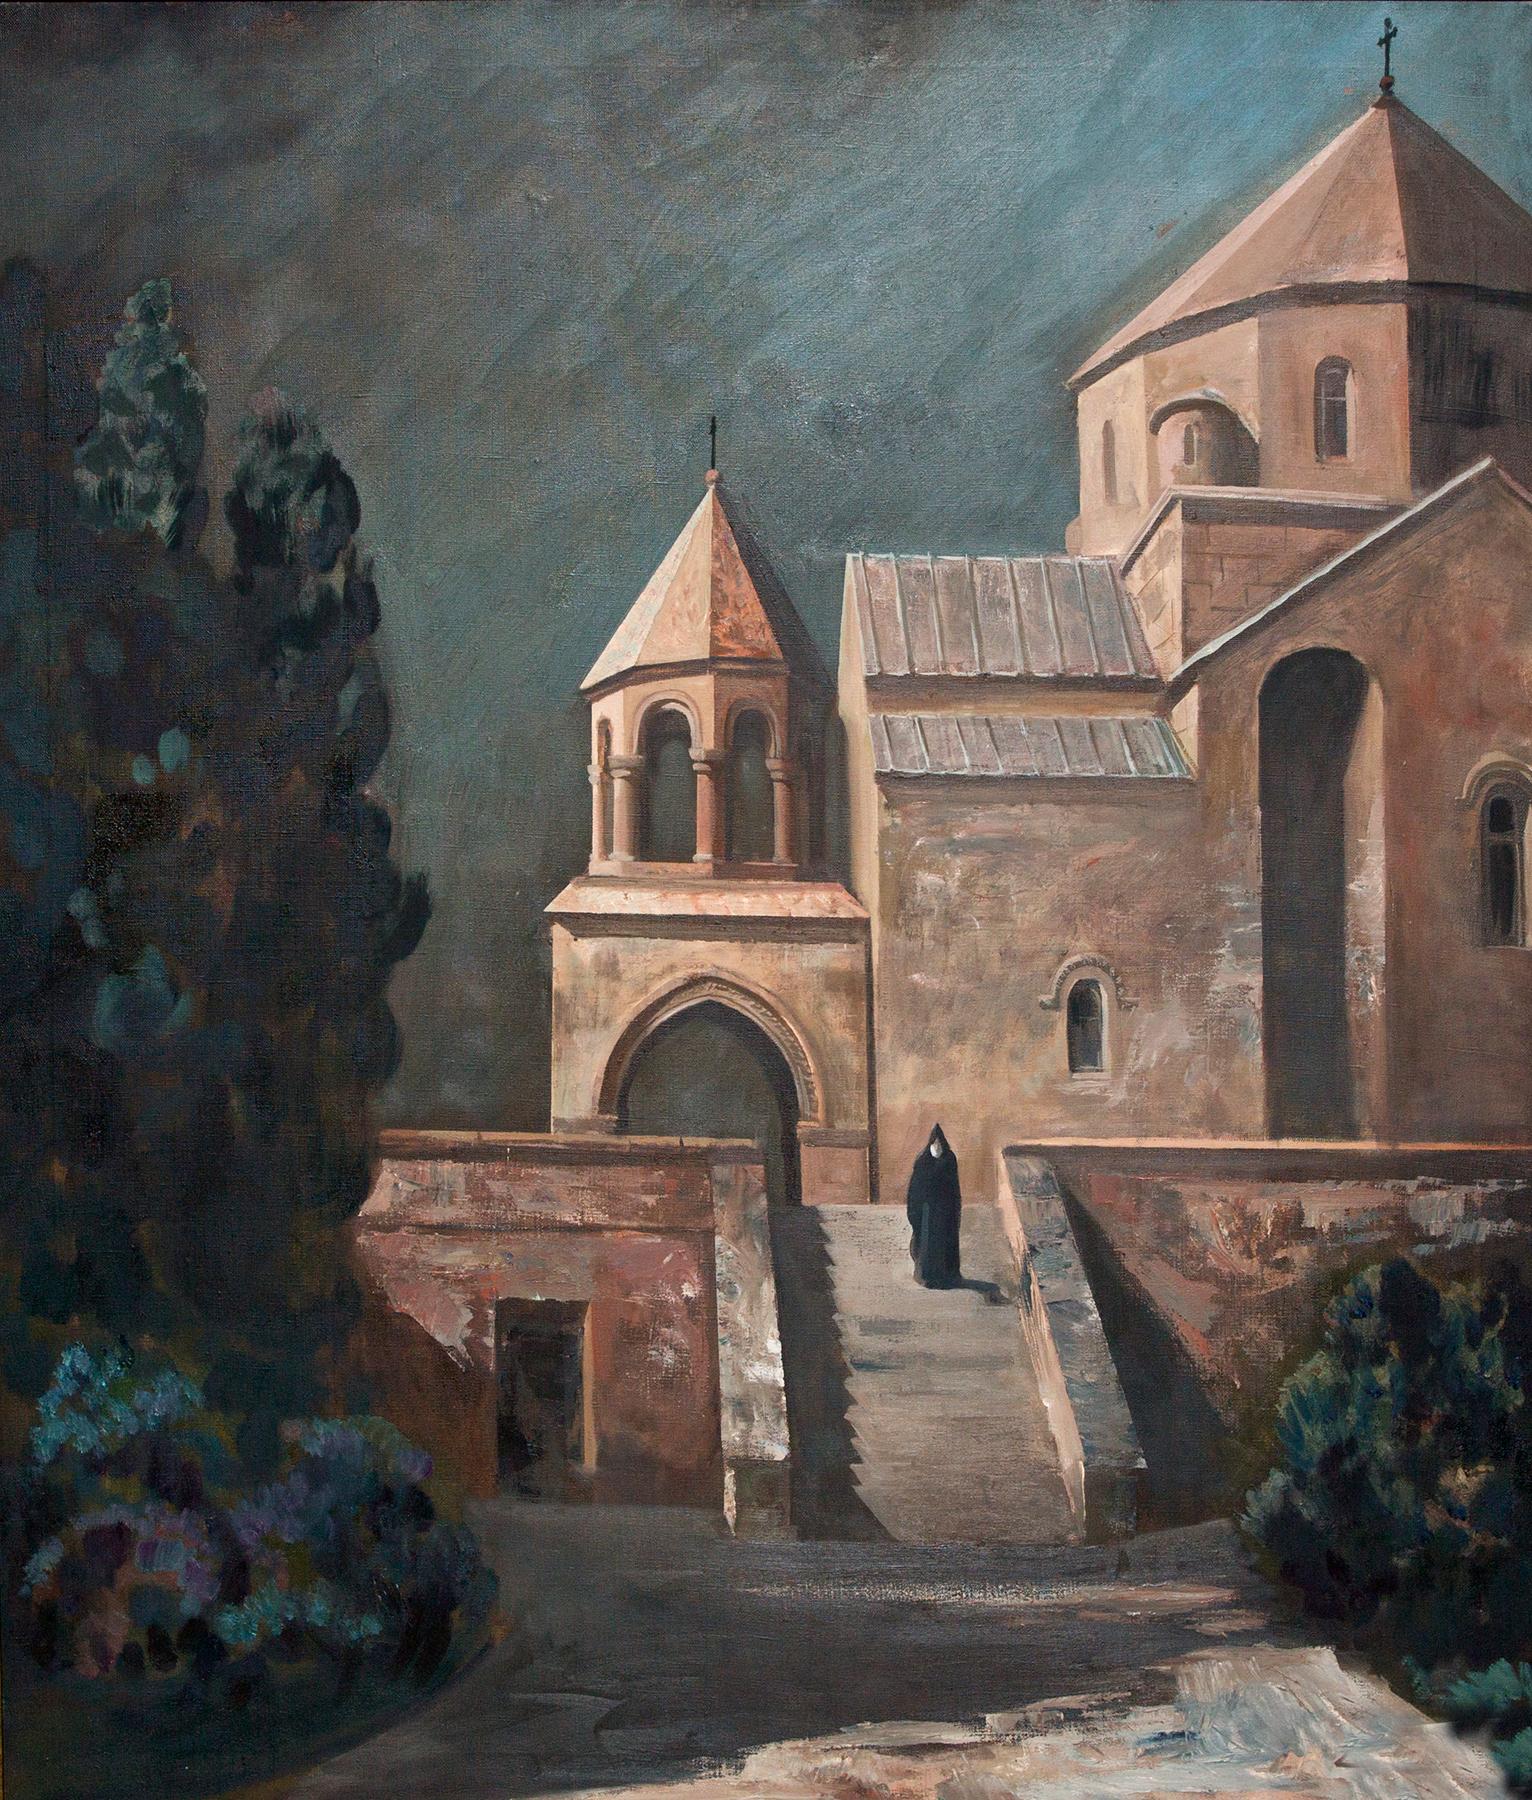 ночь. Церковь Святого Рипсима. Original modern art painting